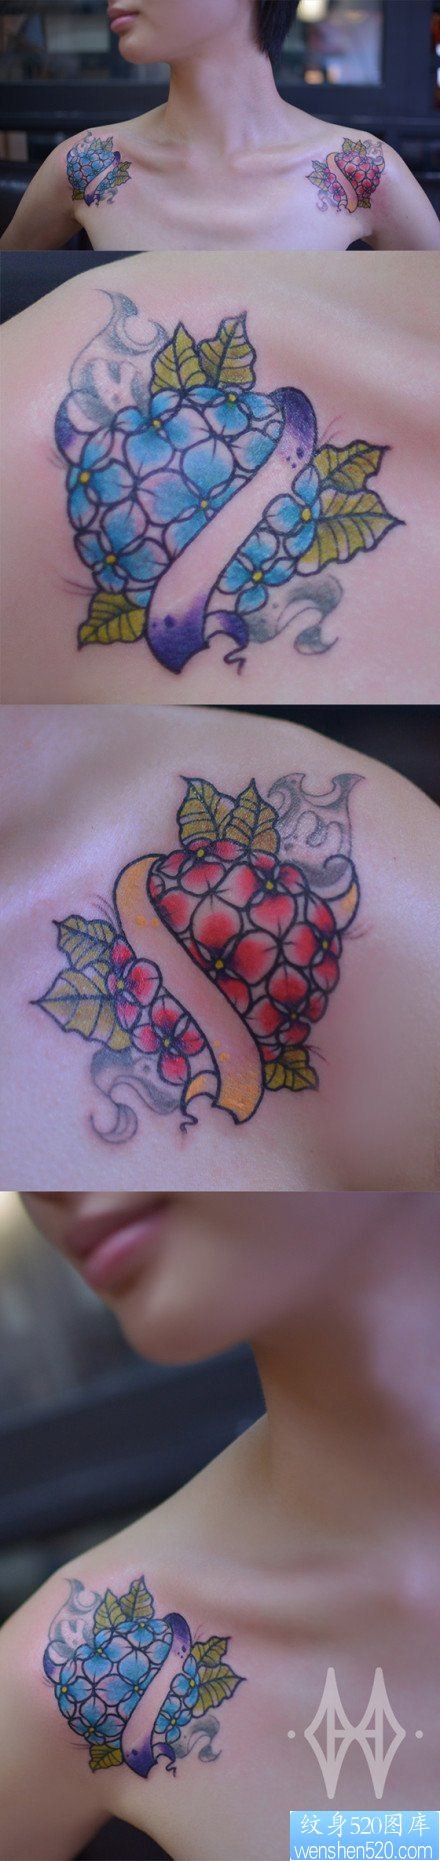 女人肩膀处小巧精美的绣花球纹身图片